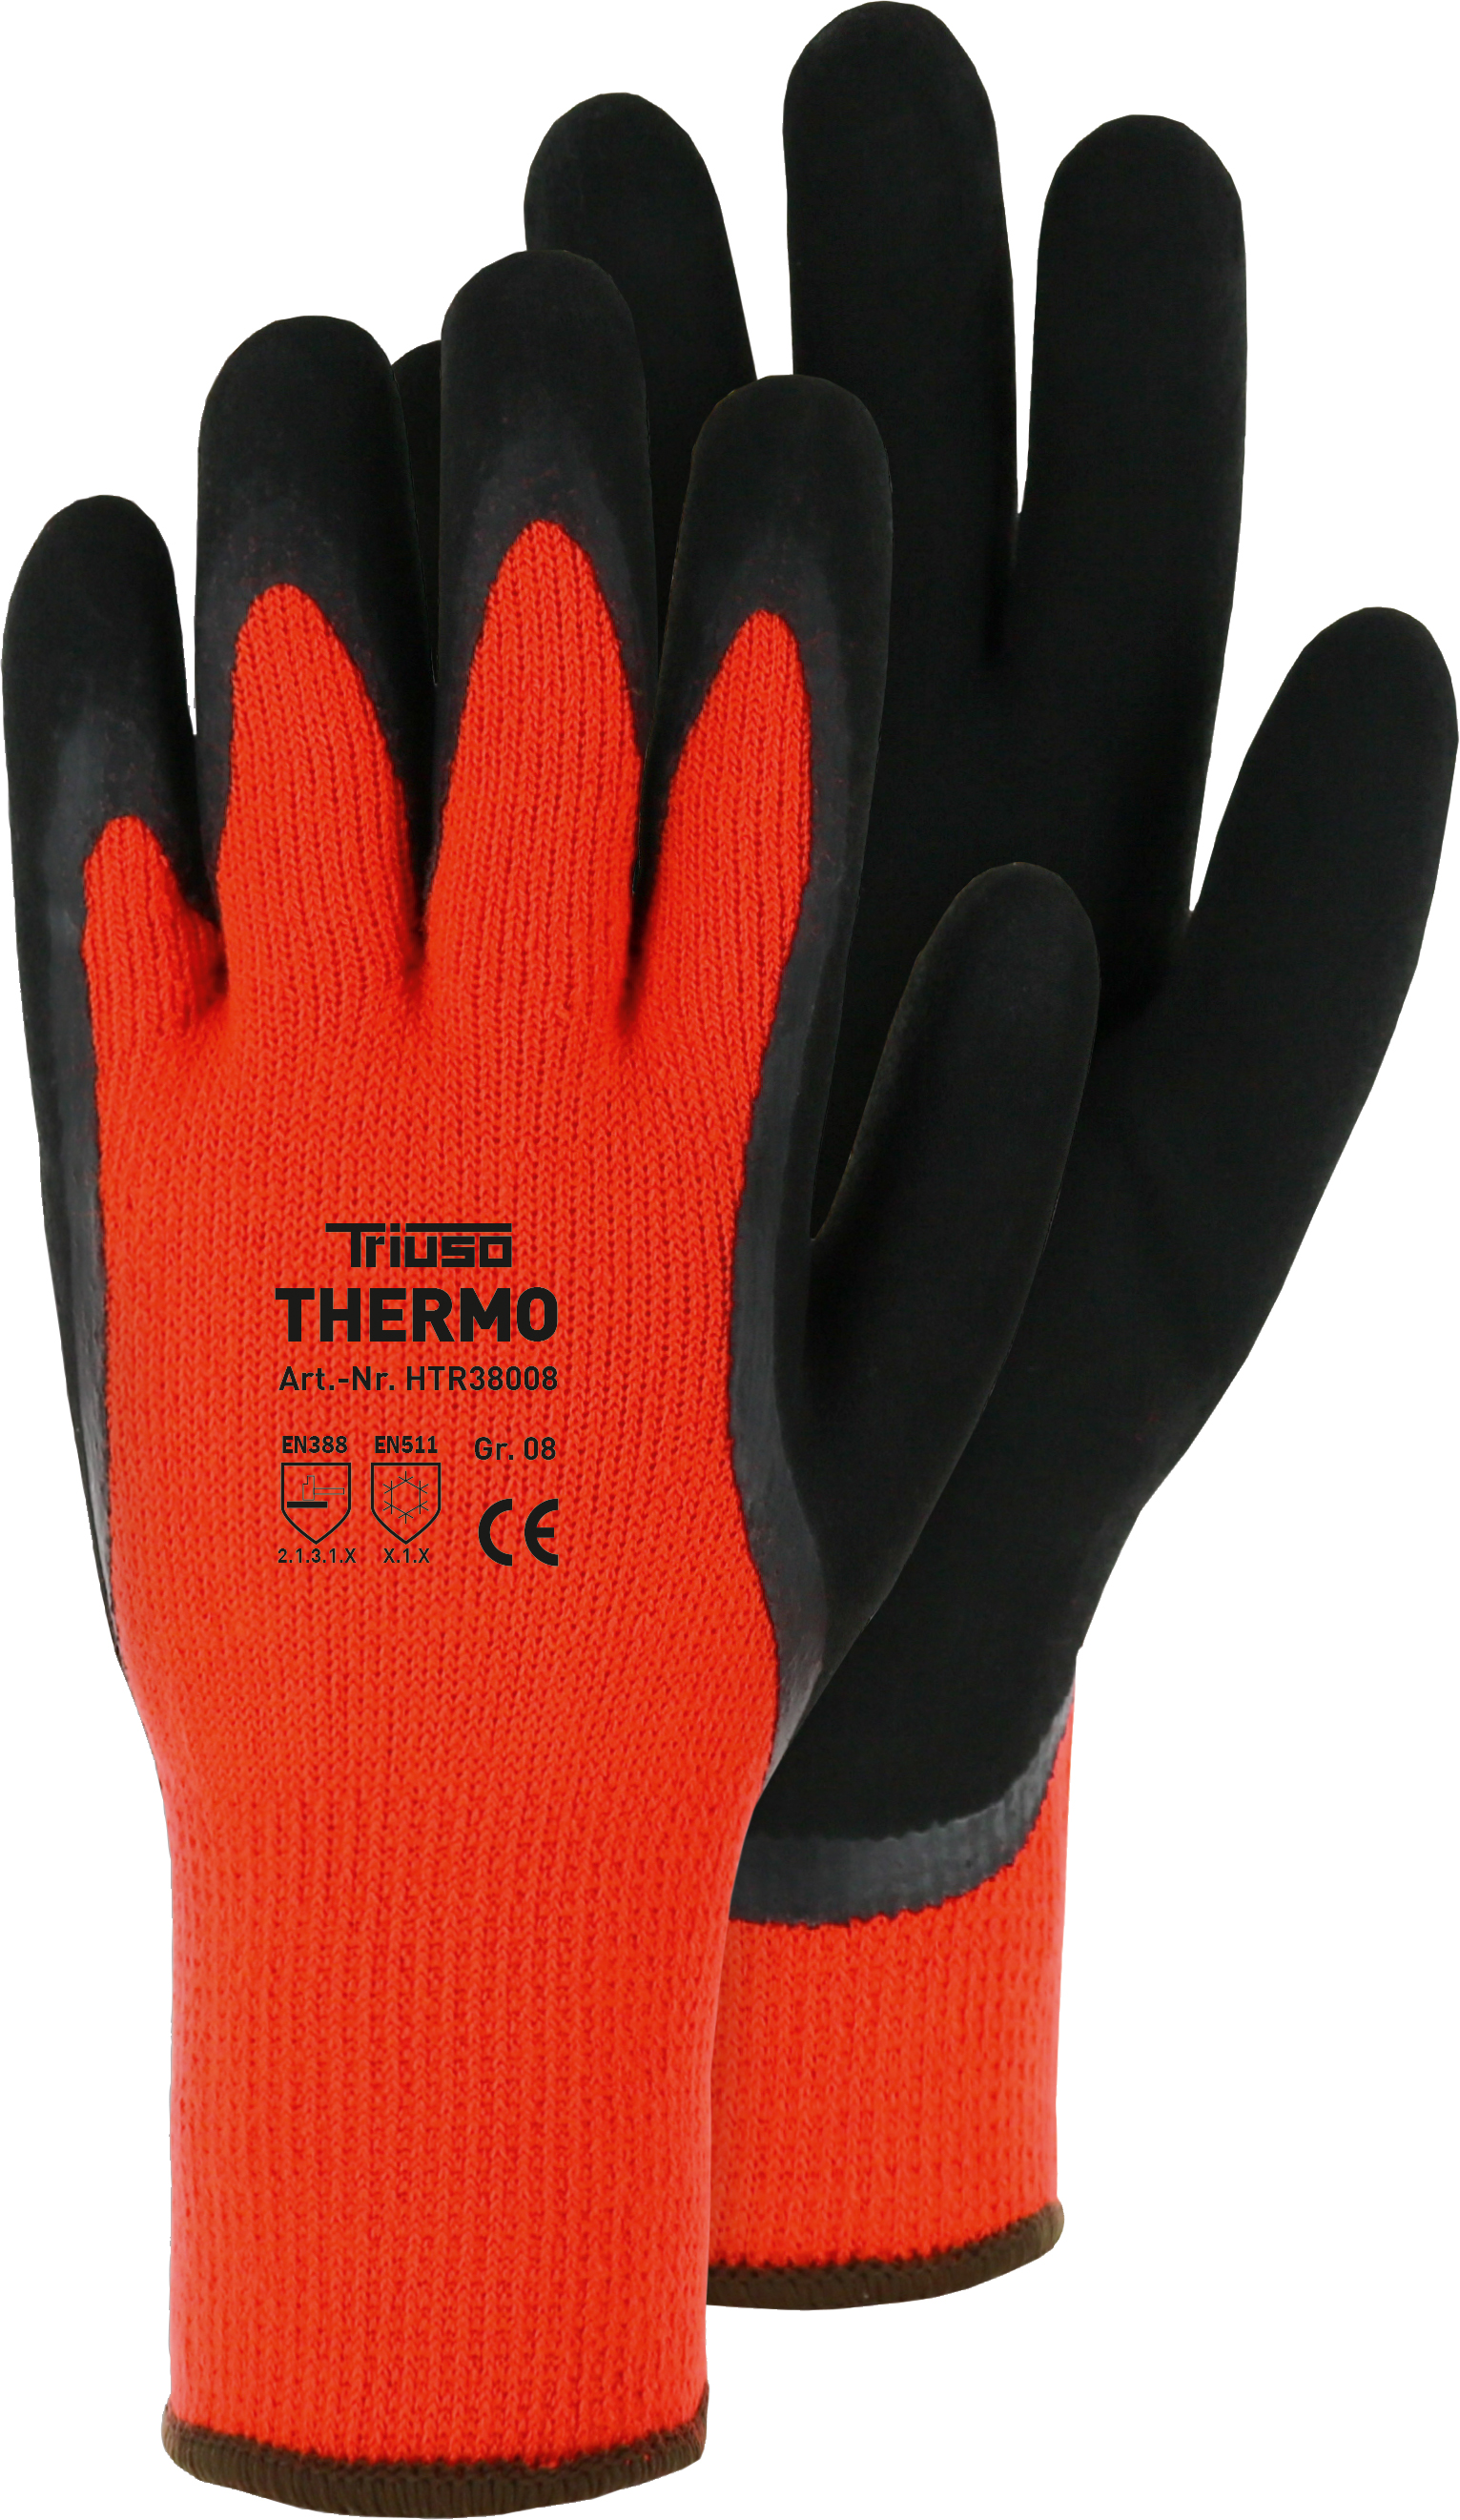 Triuso Thermo-Handschuh, orange Gr. 8